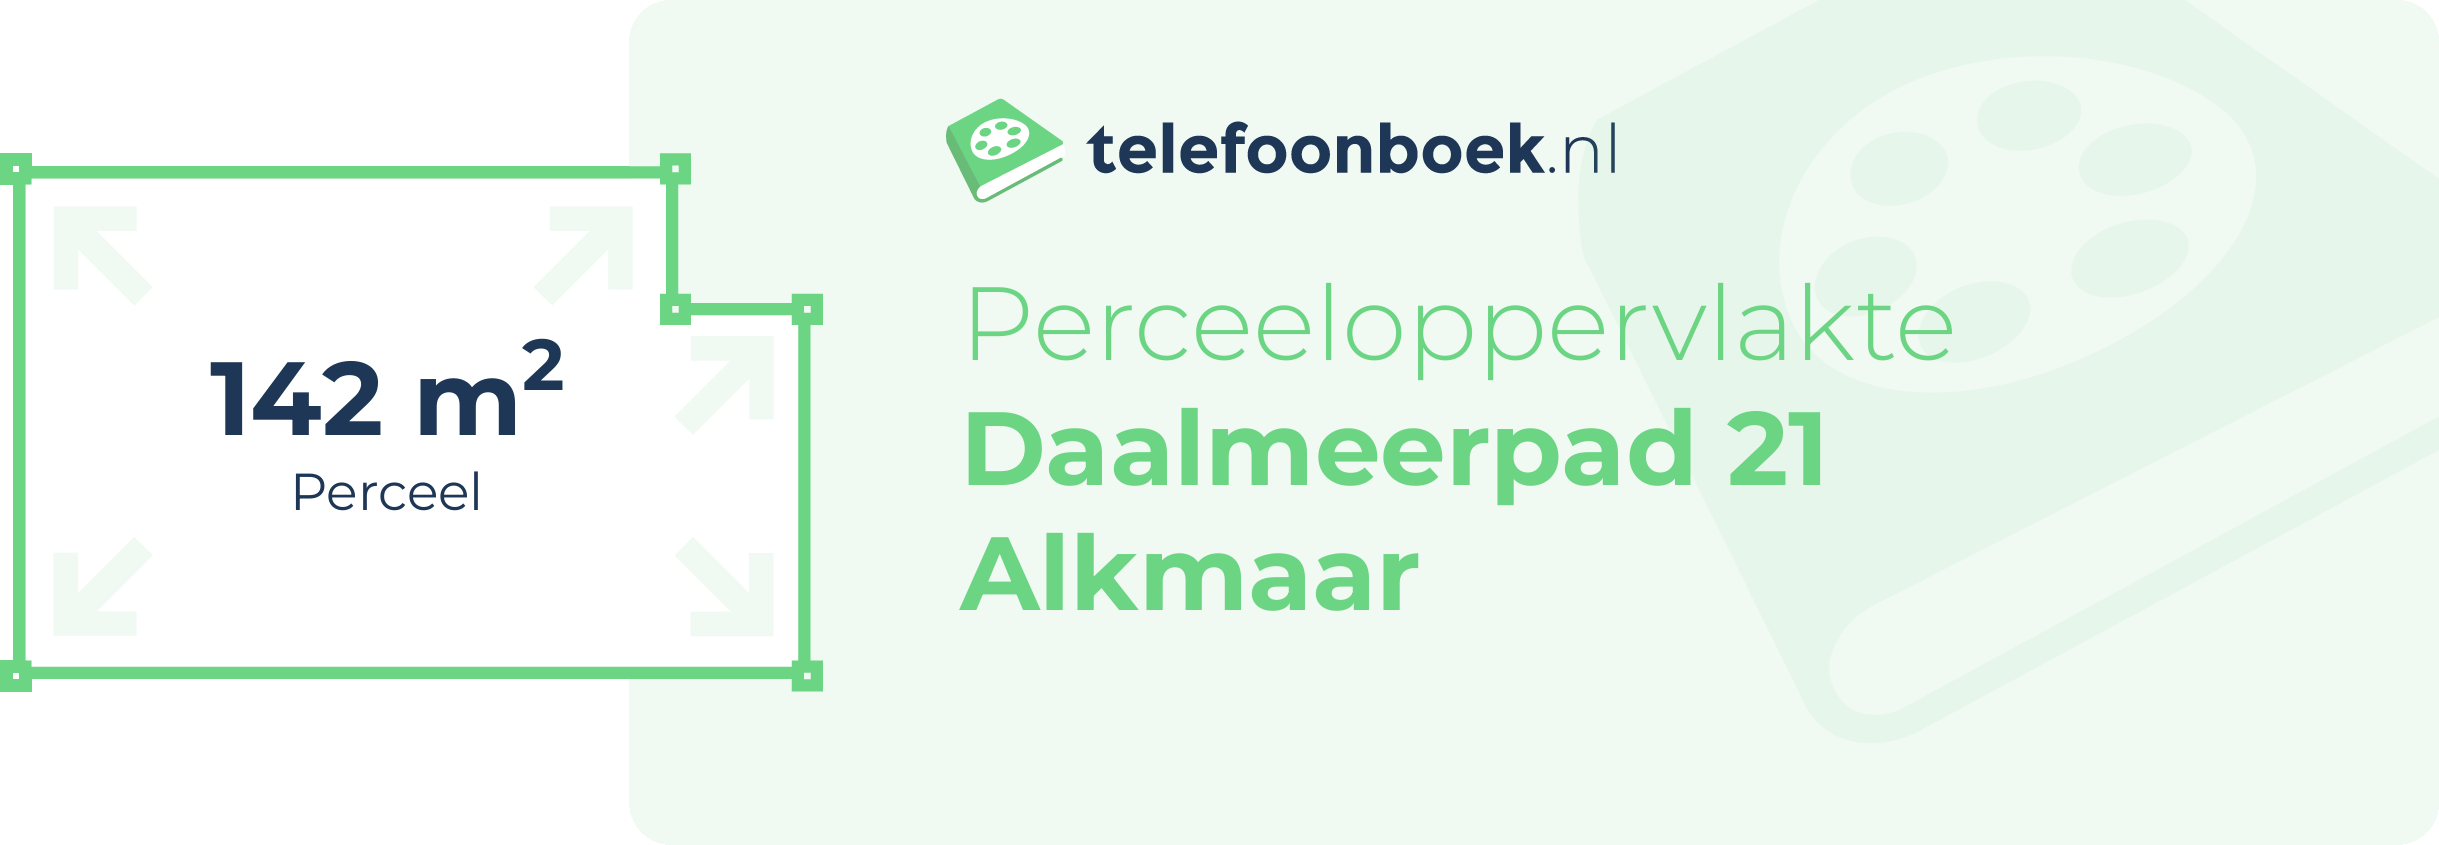 Perceeloppervlakte Daalmeerpad 21 Alkmaar